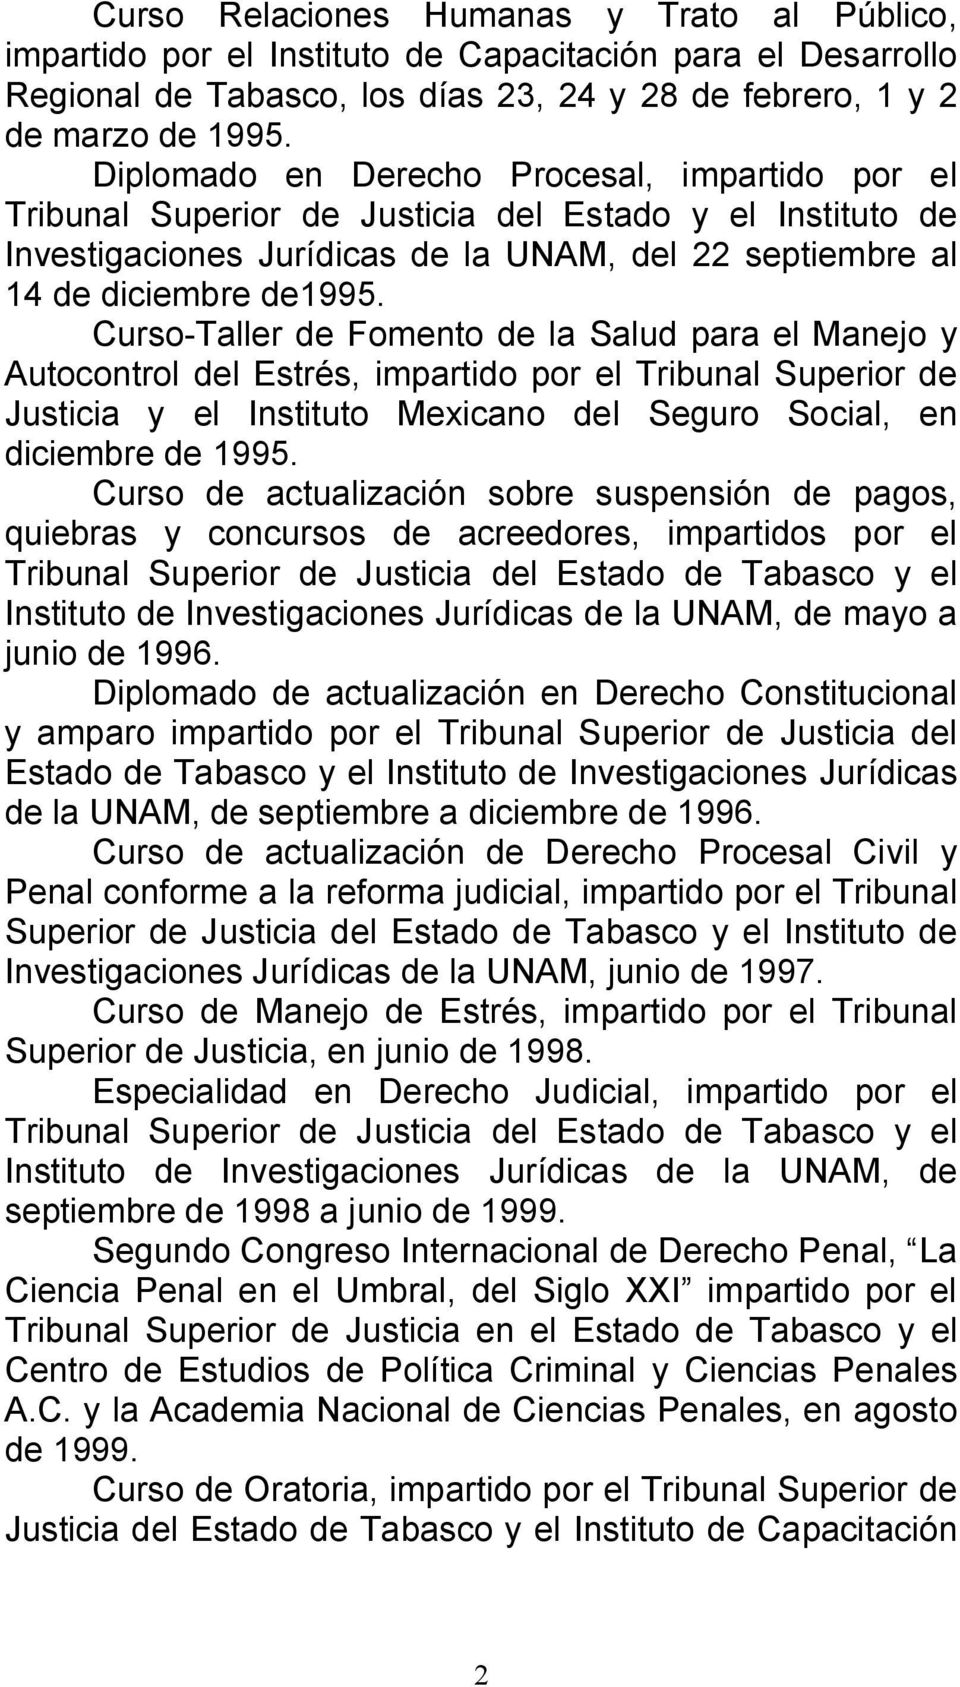 Curso-Taller de Fomento de la Salud para el Manejo y Autocontrol del Estrés, impartido por el Tribunal Superior de Justicia y el Instituto Mexicano del Seguro Social, en diciembre de 1995.